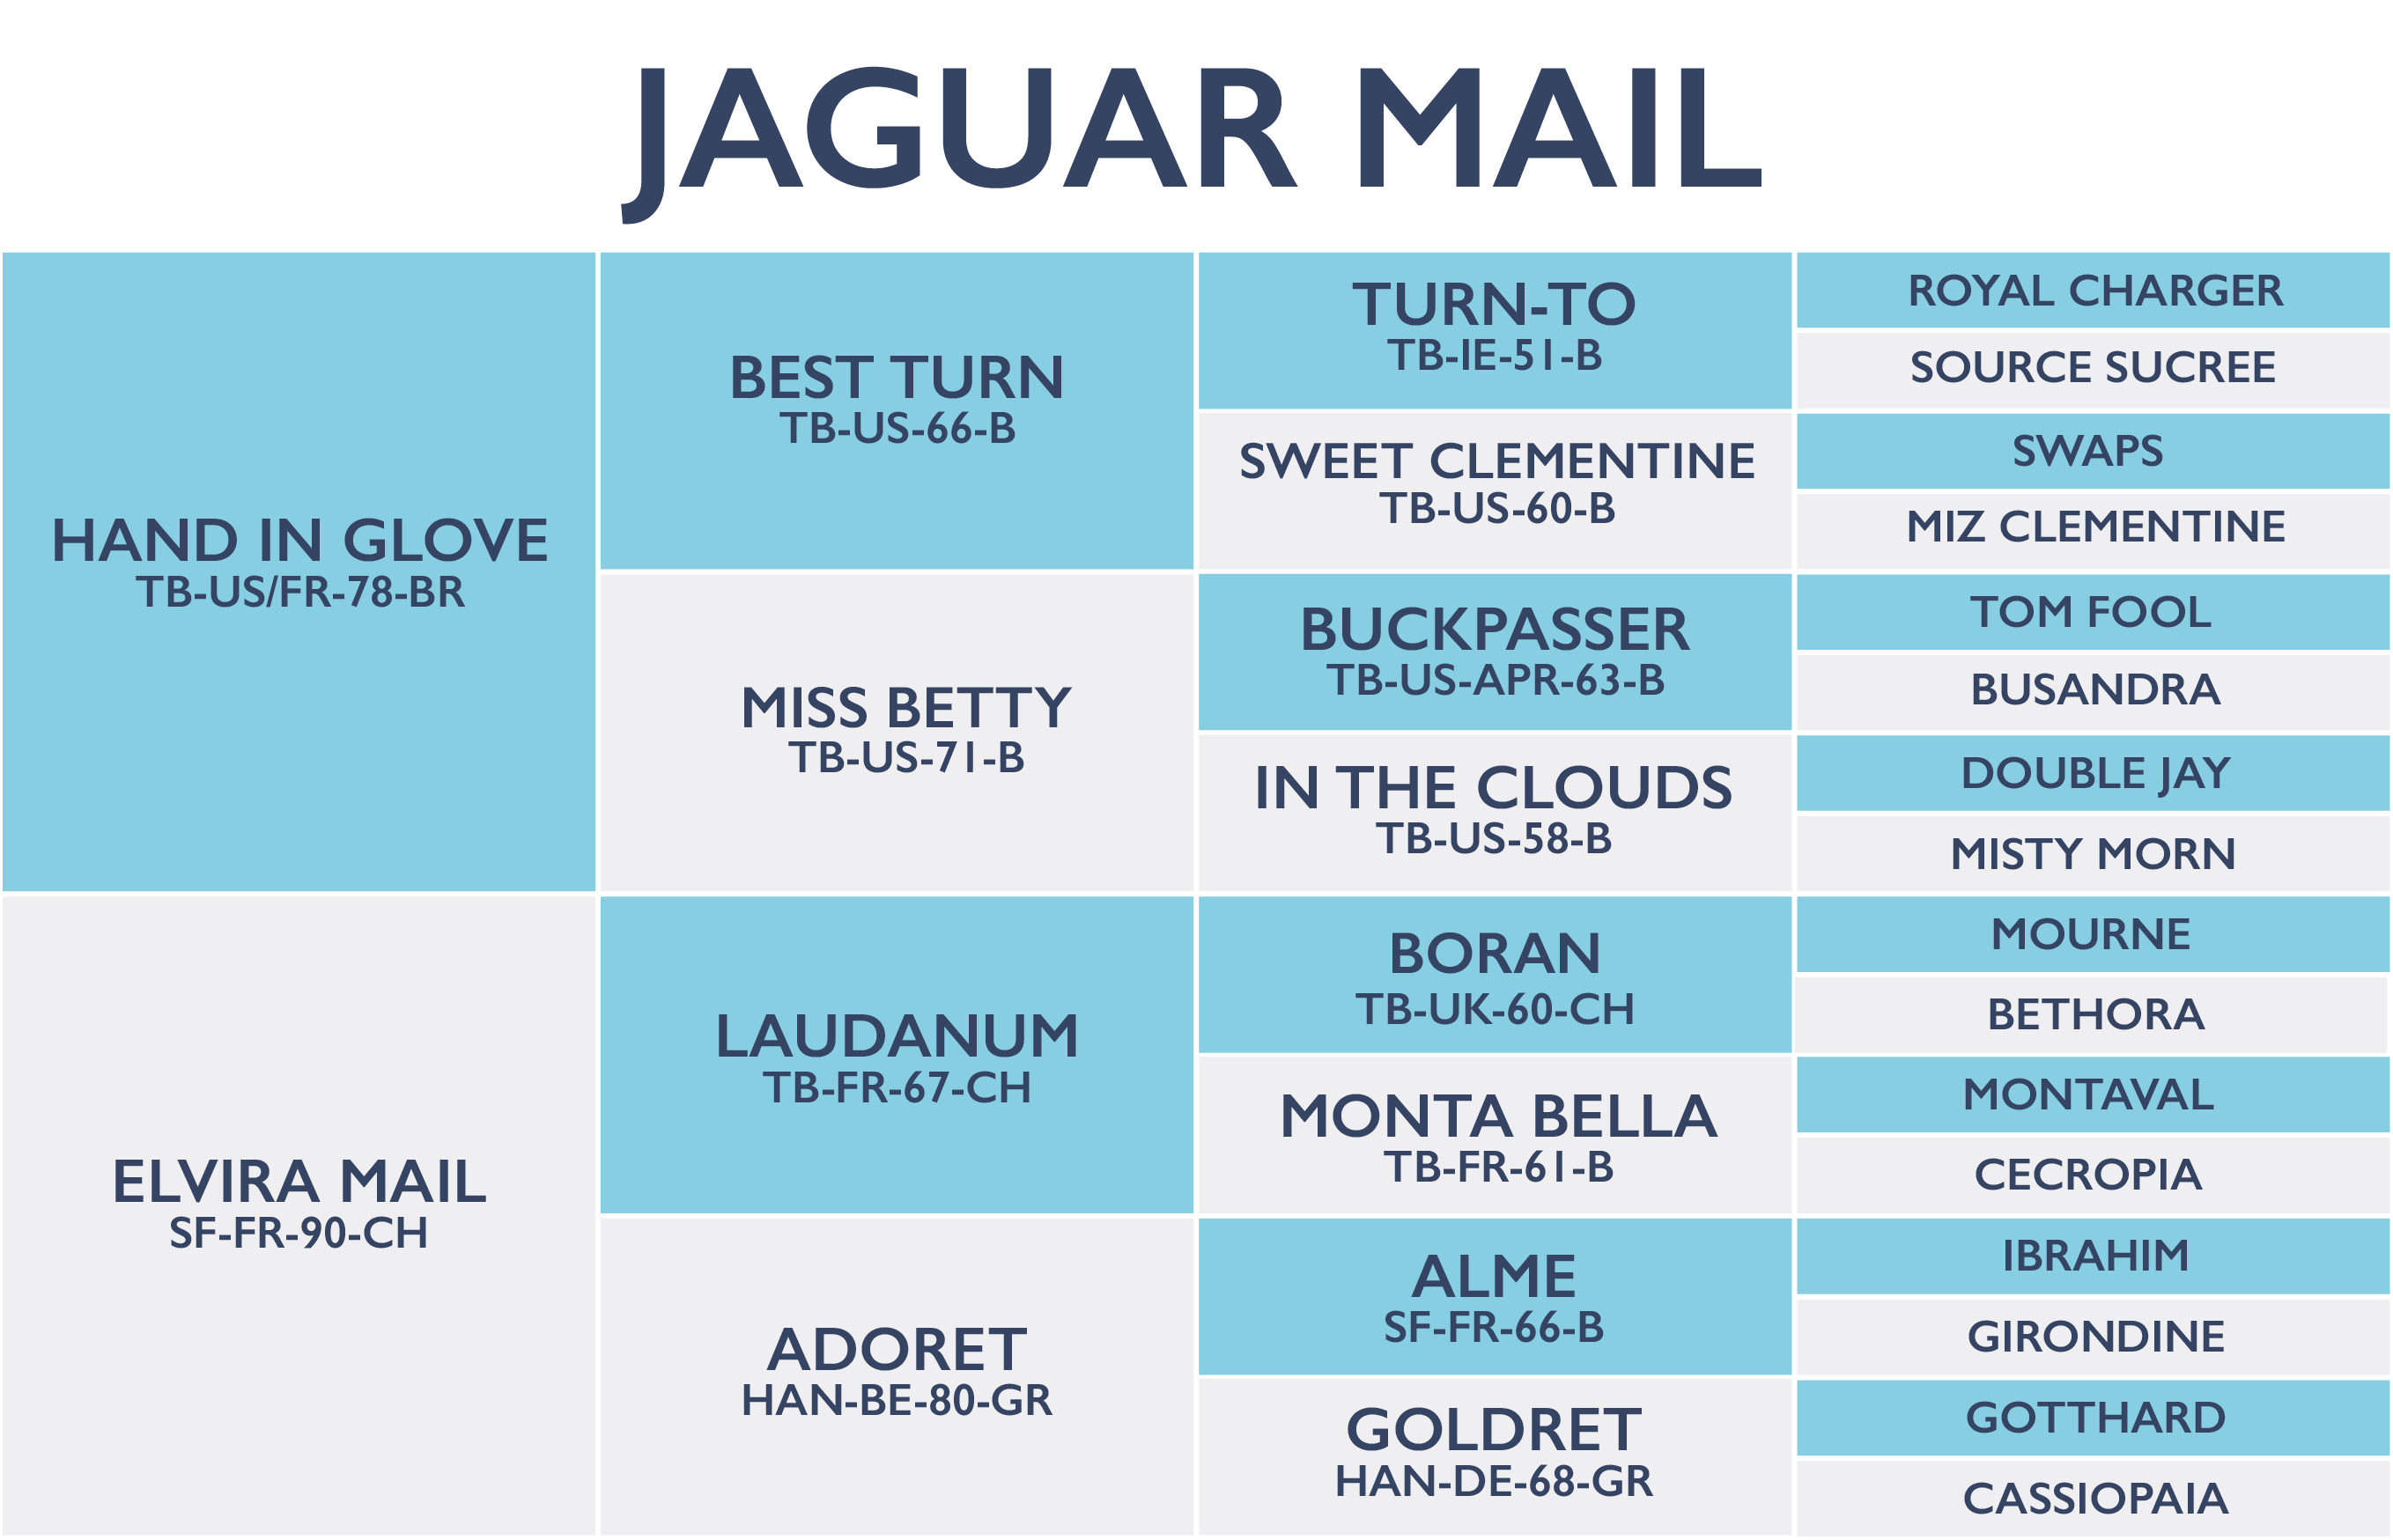 Jaguar Mail